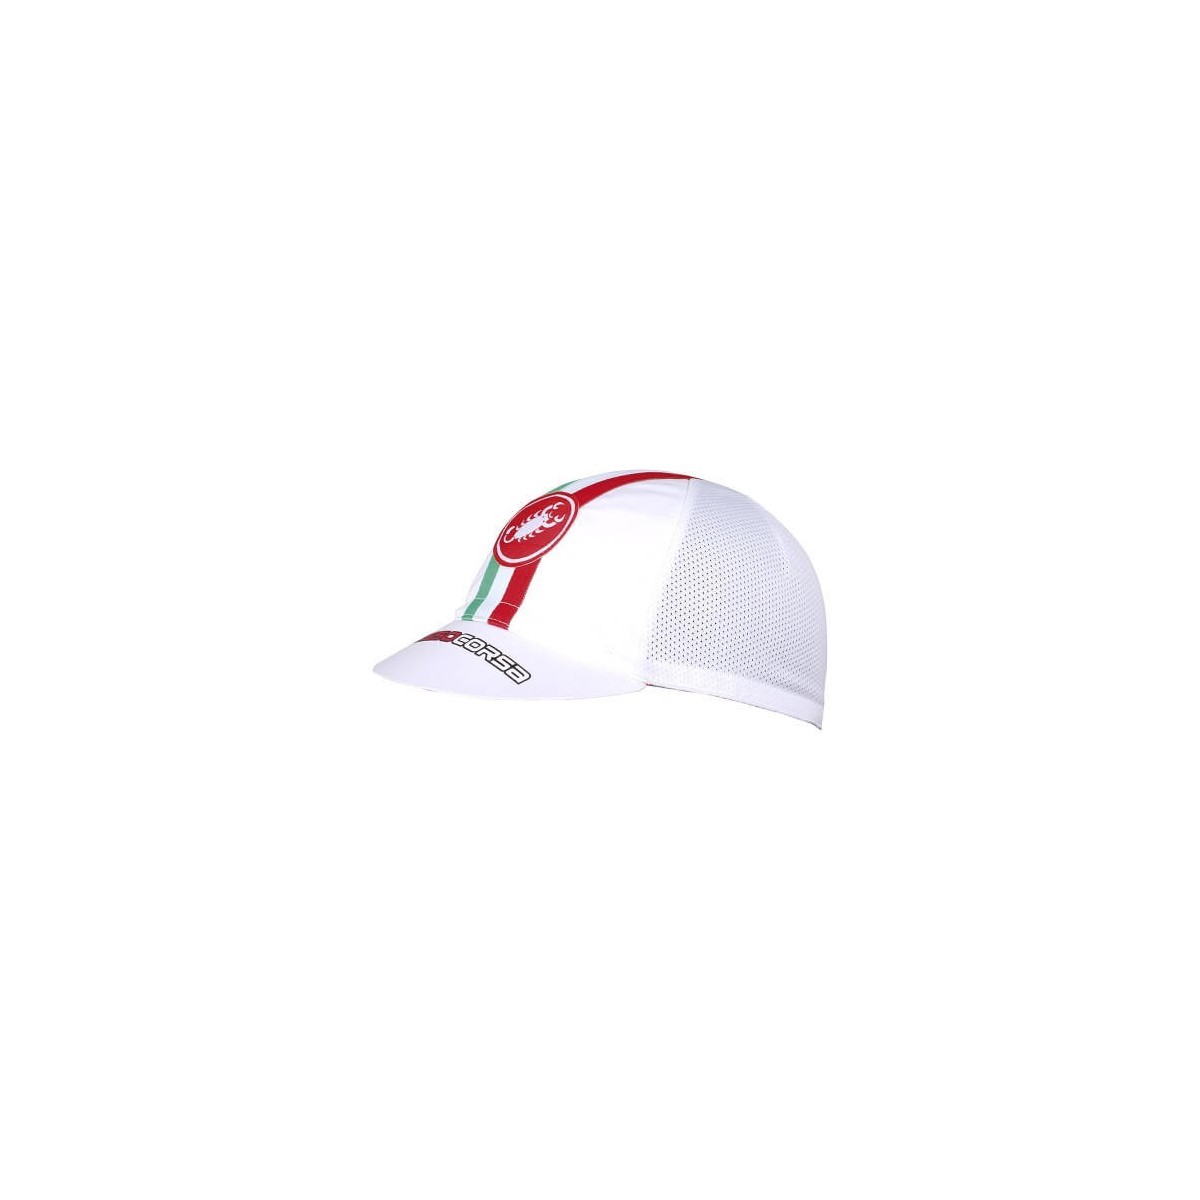 unter günstig Kaufen-Castelli Performance White Cap. Castelli Performance White Cap <![CDATA[Es besteht aus einem hoch atmungsaktiven Material und eignet sich perfekt für einen lässigen Stil oder zum Tragen im Radsporttraining unter dem Helm.]]>. 